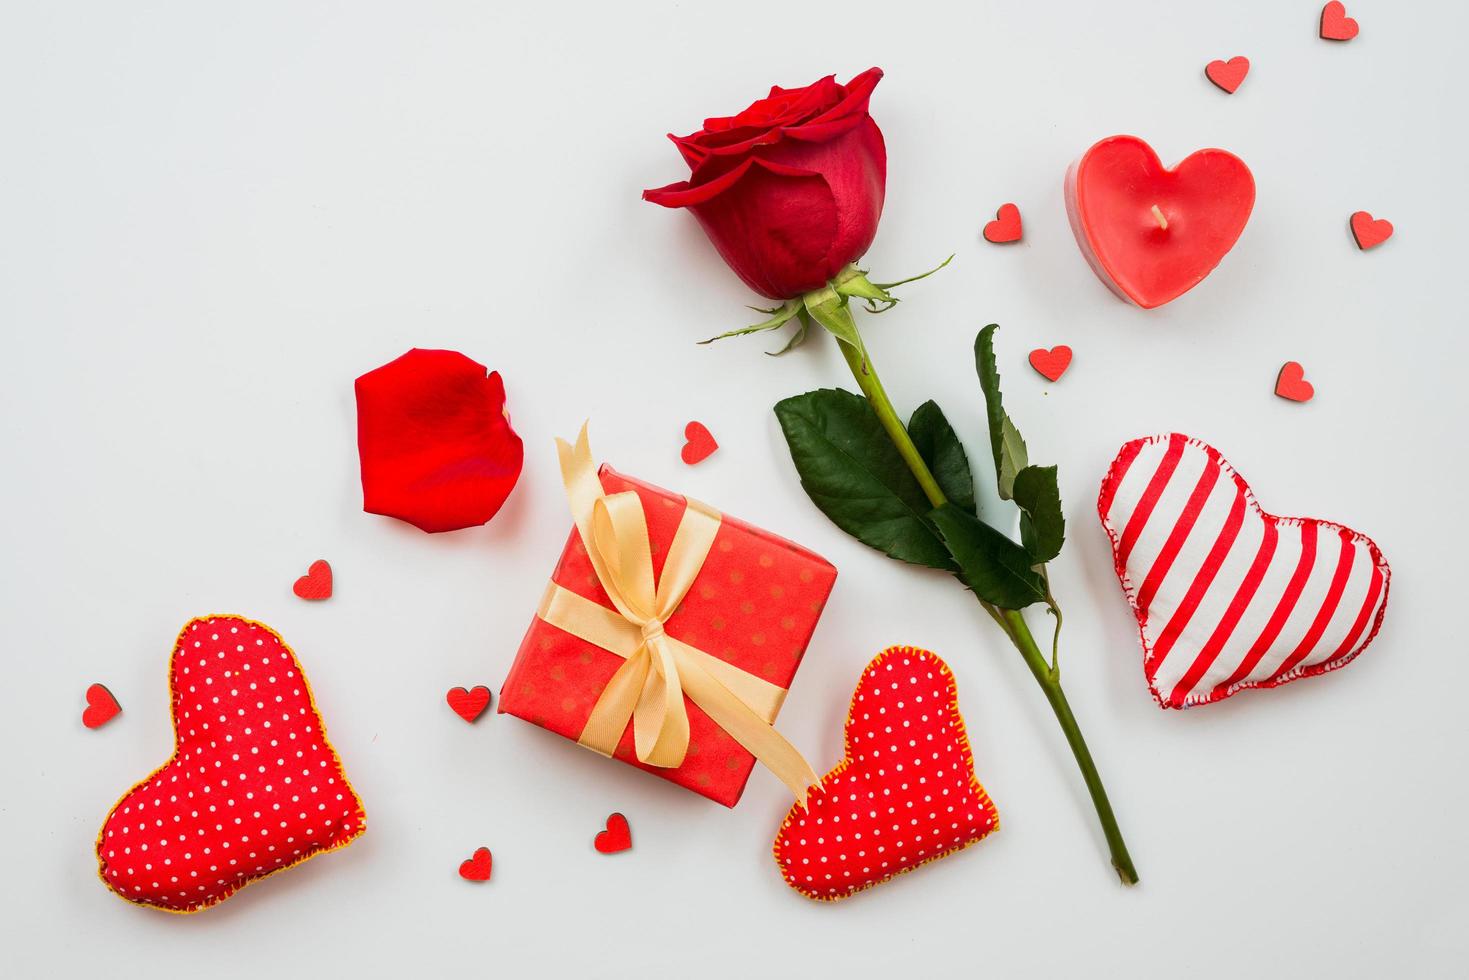 sobre un fondo blanco es una composición de rosas rojas, regalos y corazones. el dia de san valentin ellos foto